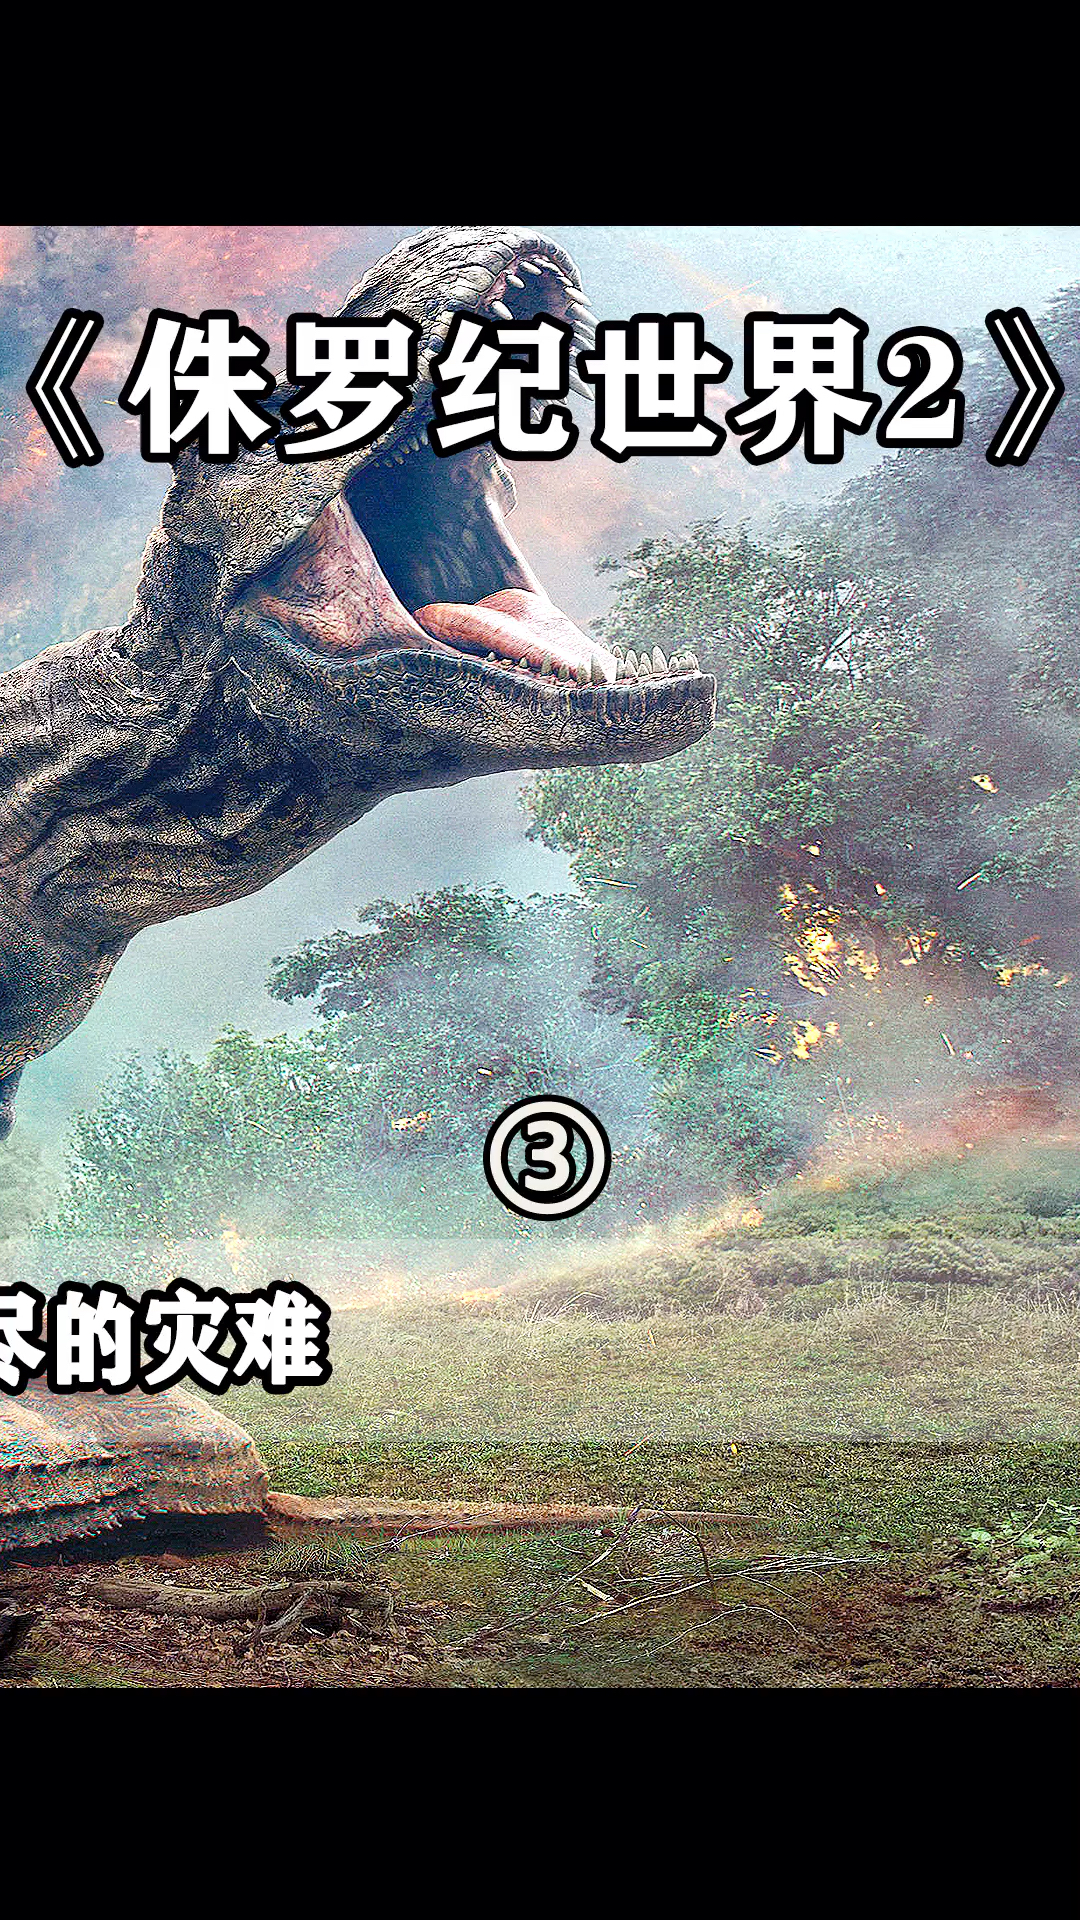 电影解说火山喷发恐龙将面临灭绝